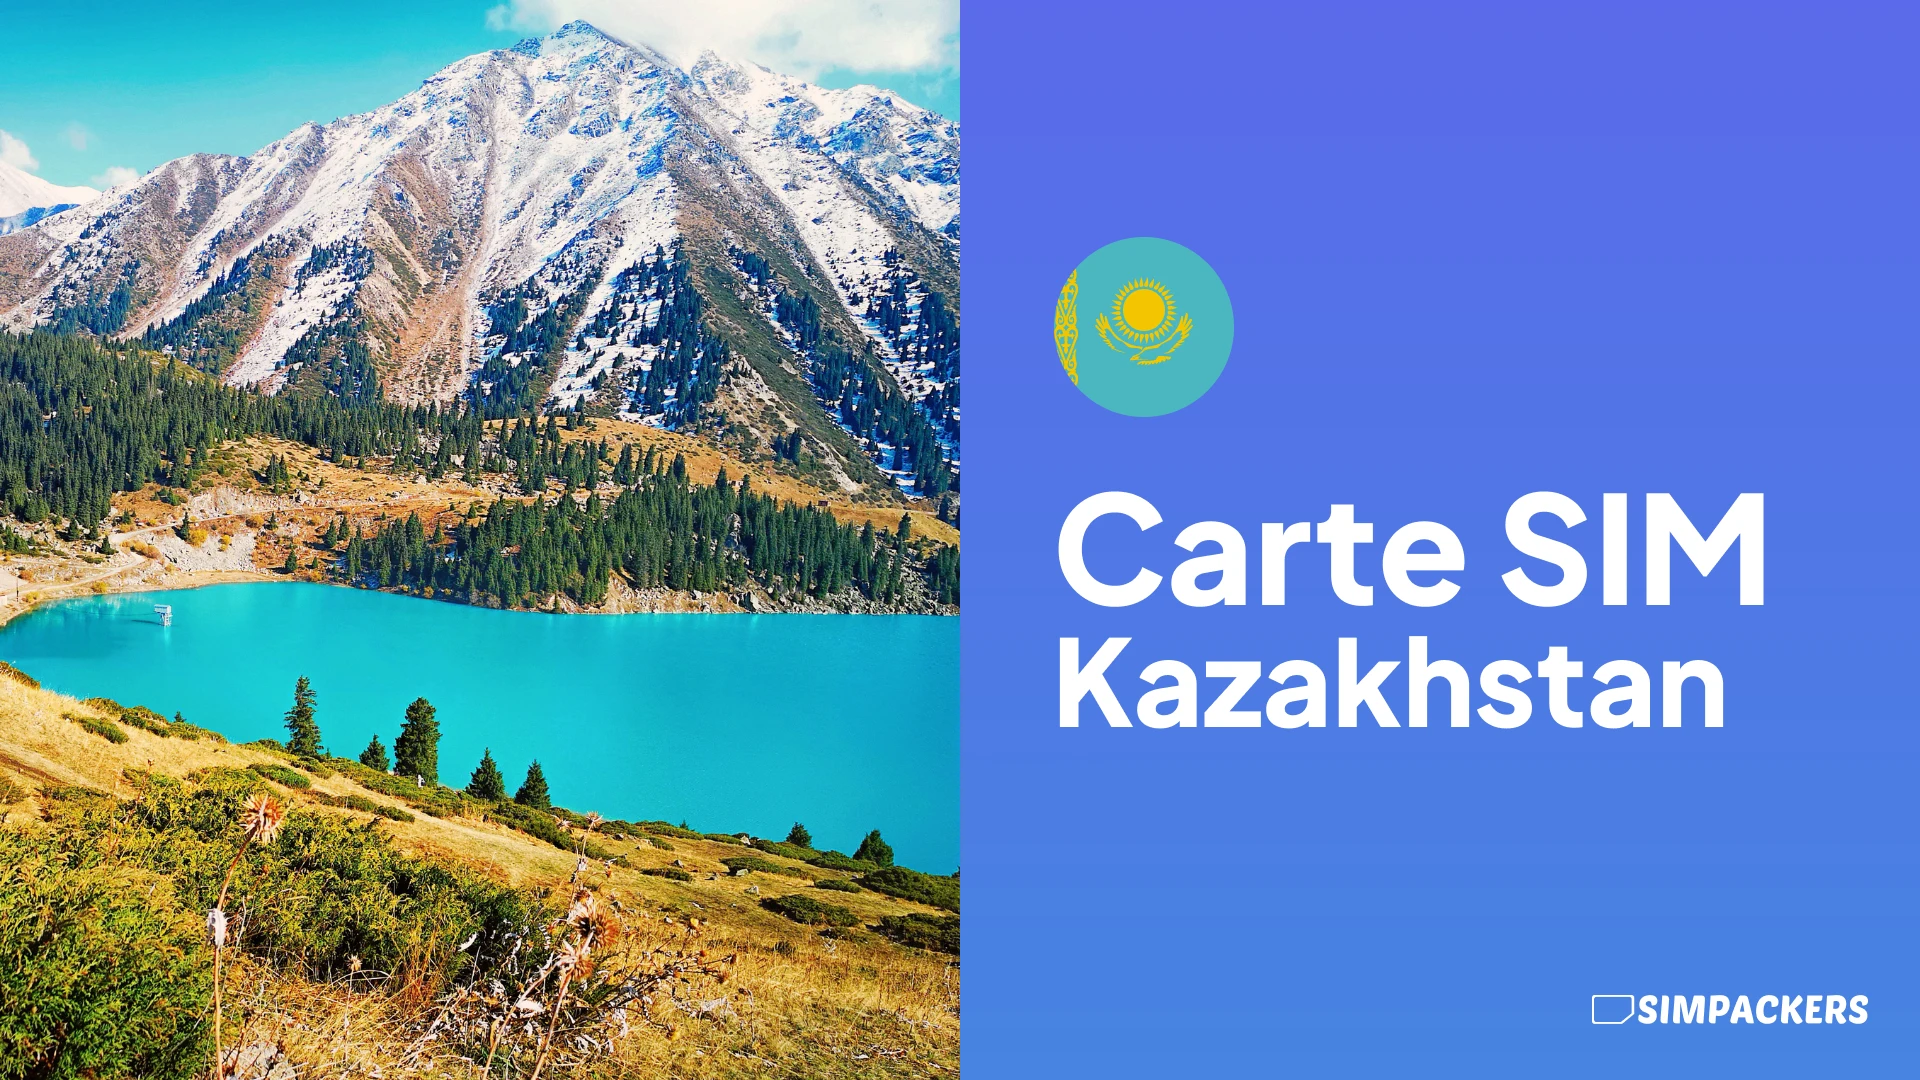 FR/FEATURED_IMAGES/carte-sim-kazakhstan.webp